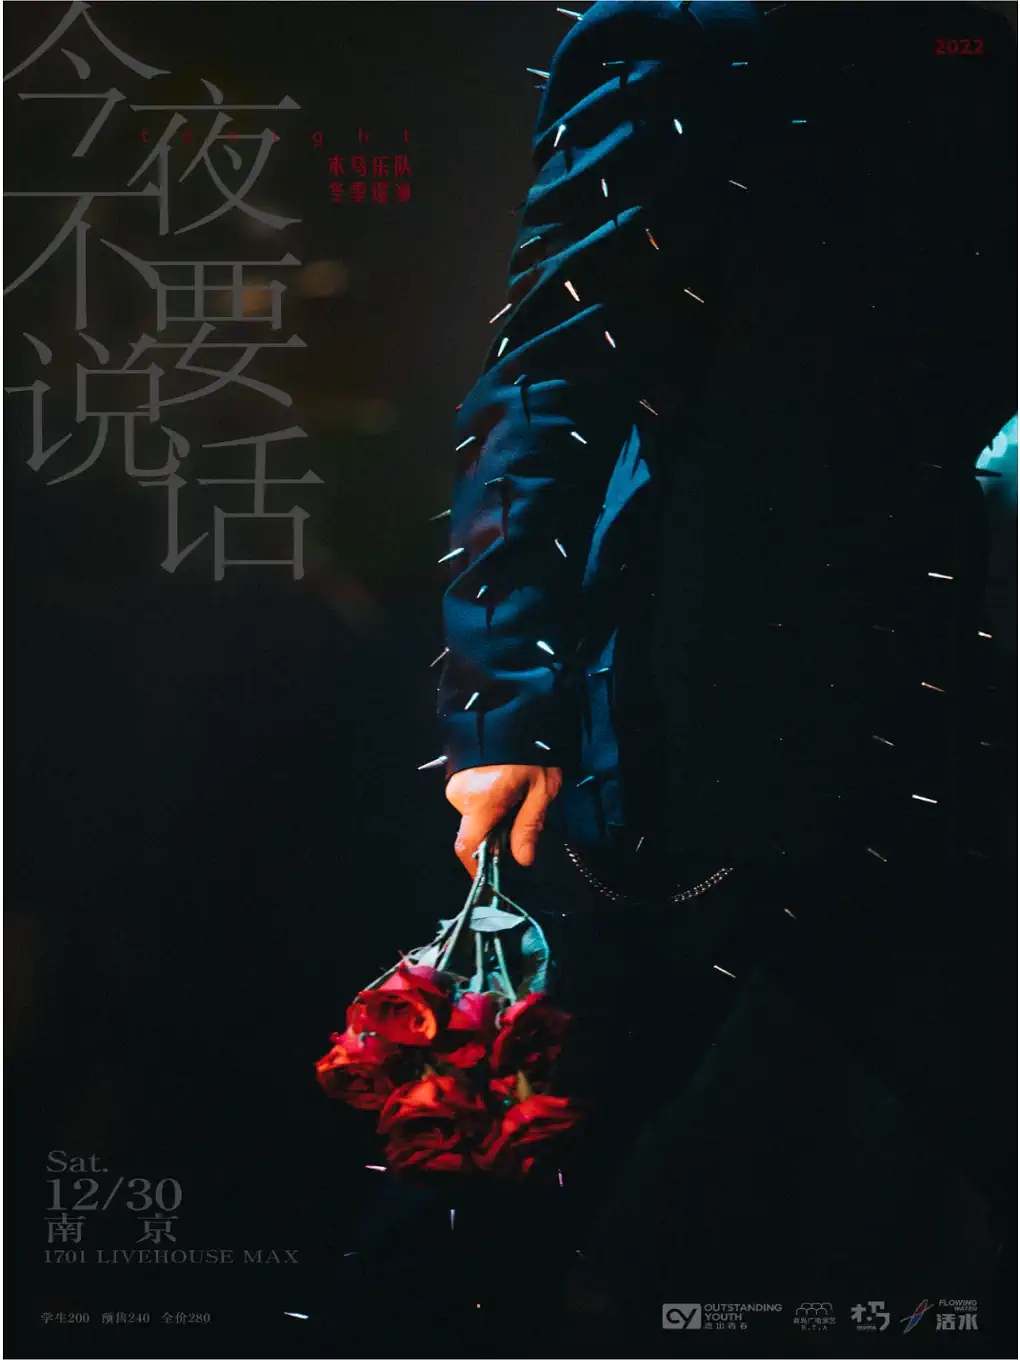 【南京】木马乐队「今夜不要说话」冬季巡演 南京站